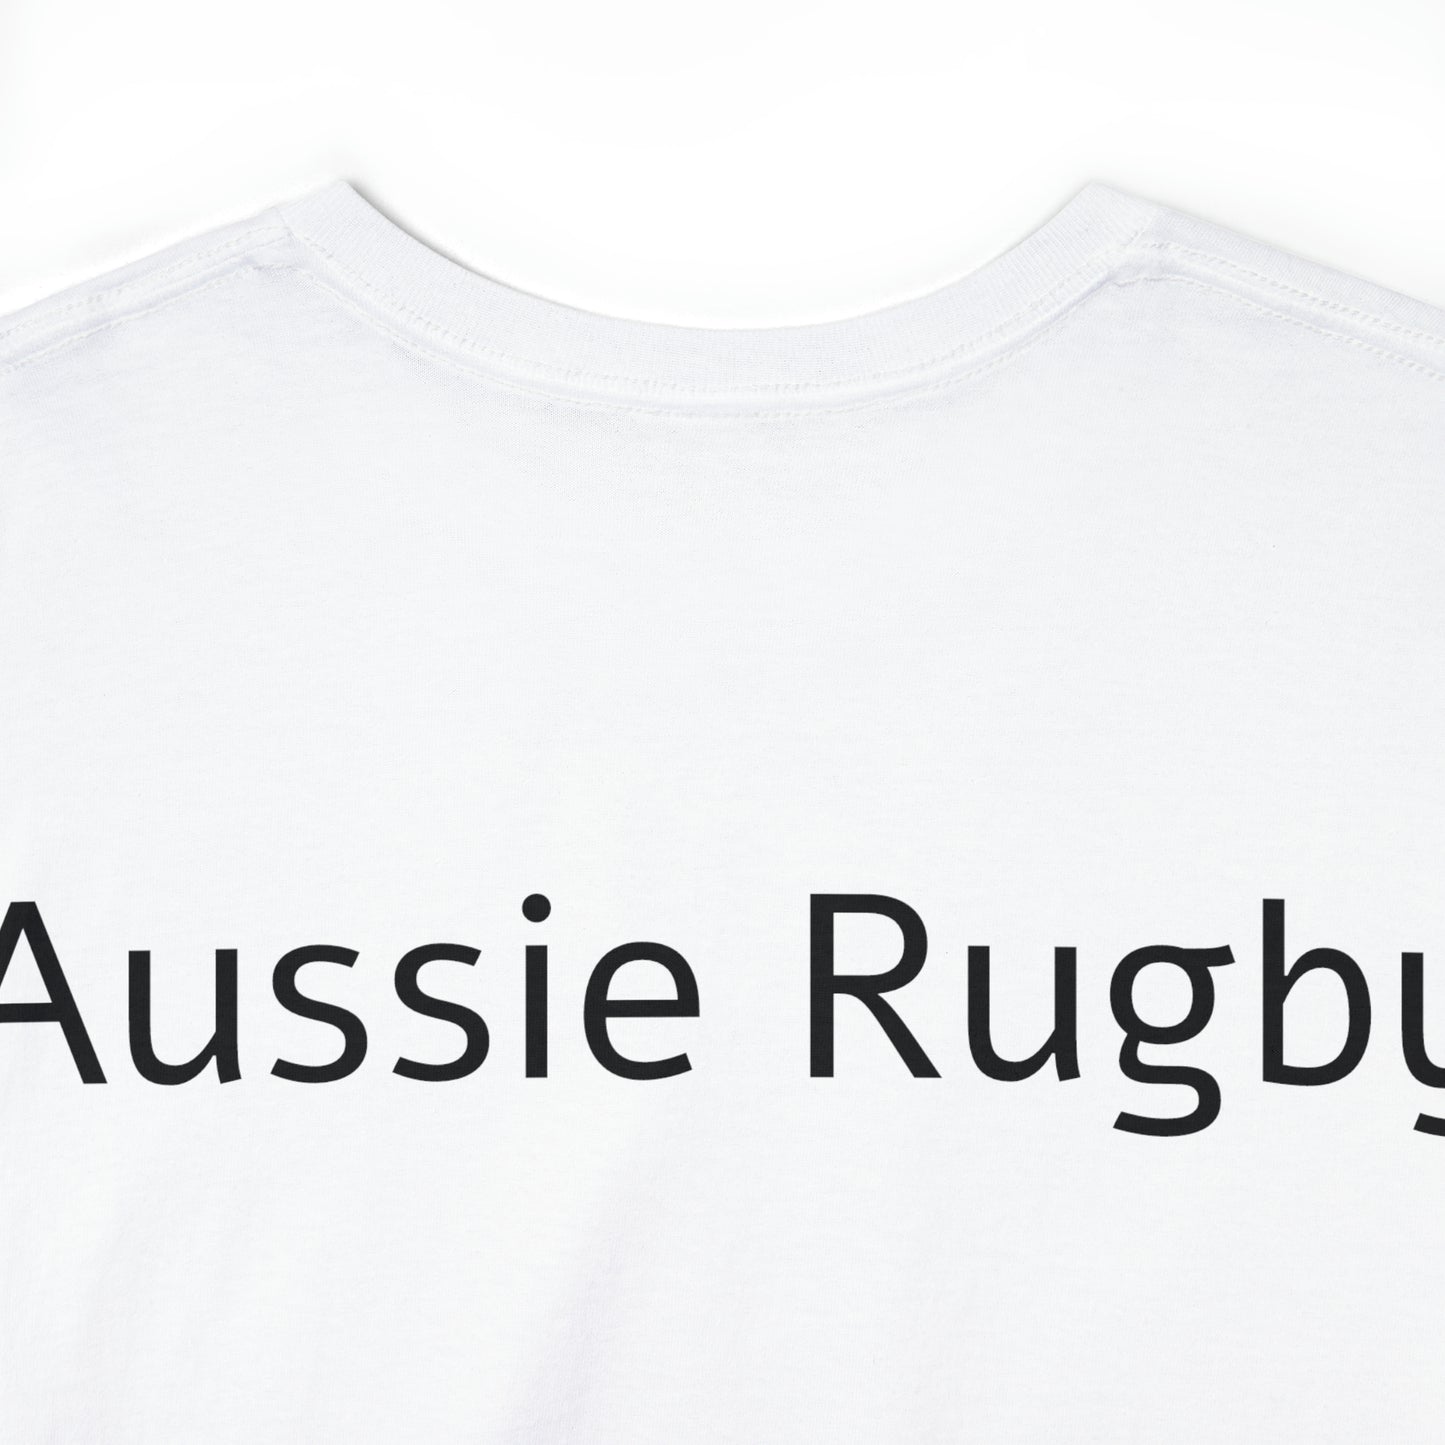 Aussie Aussie Aussie - light shirts